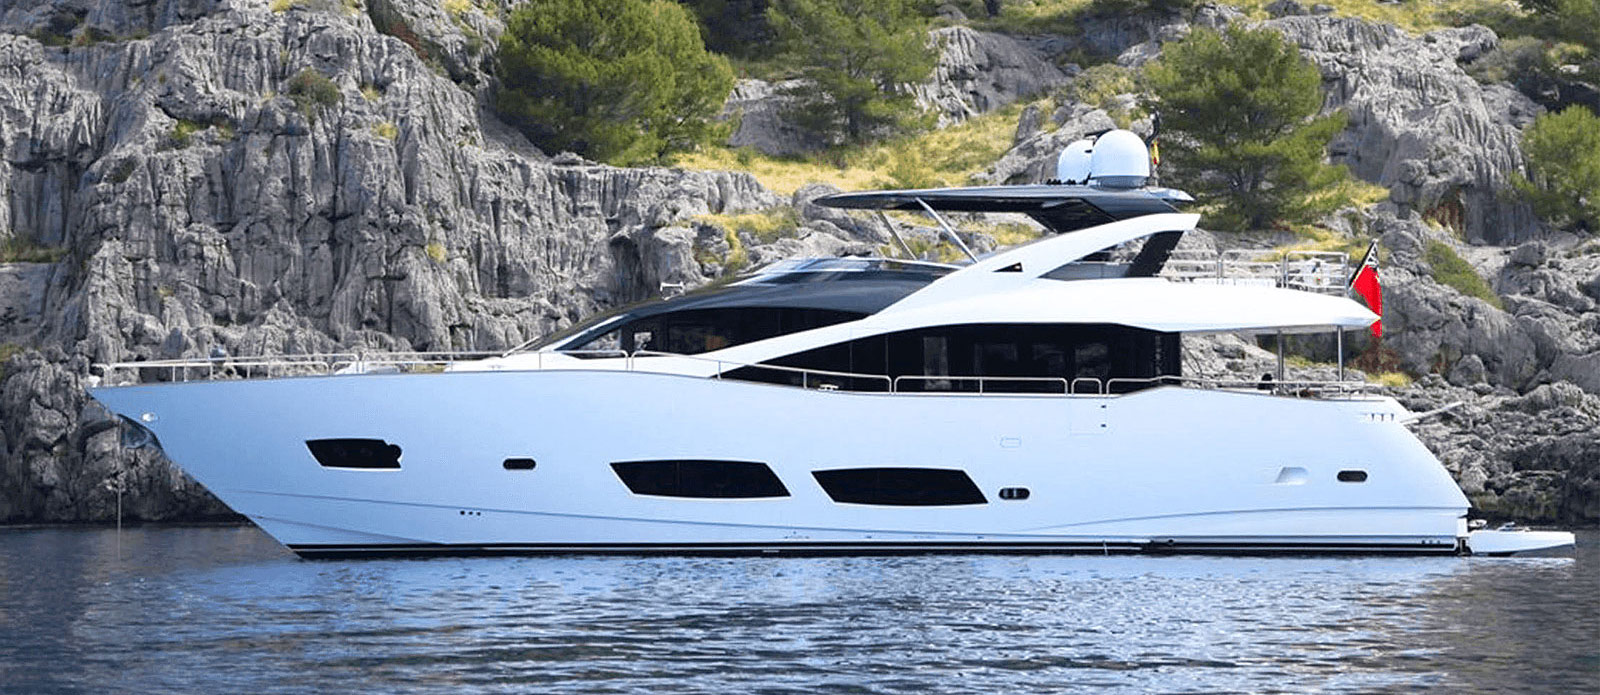 sunseeker 28 metre yacht for sale